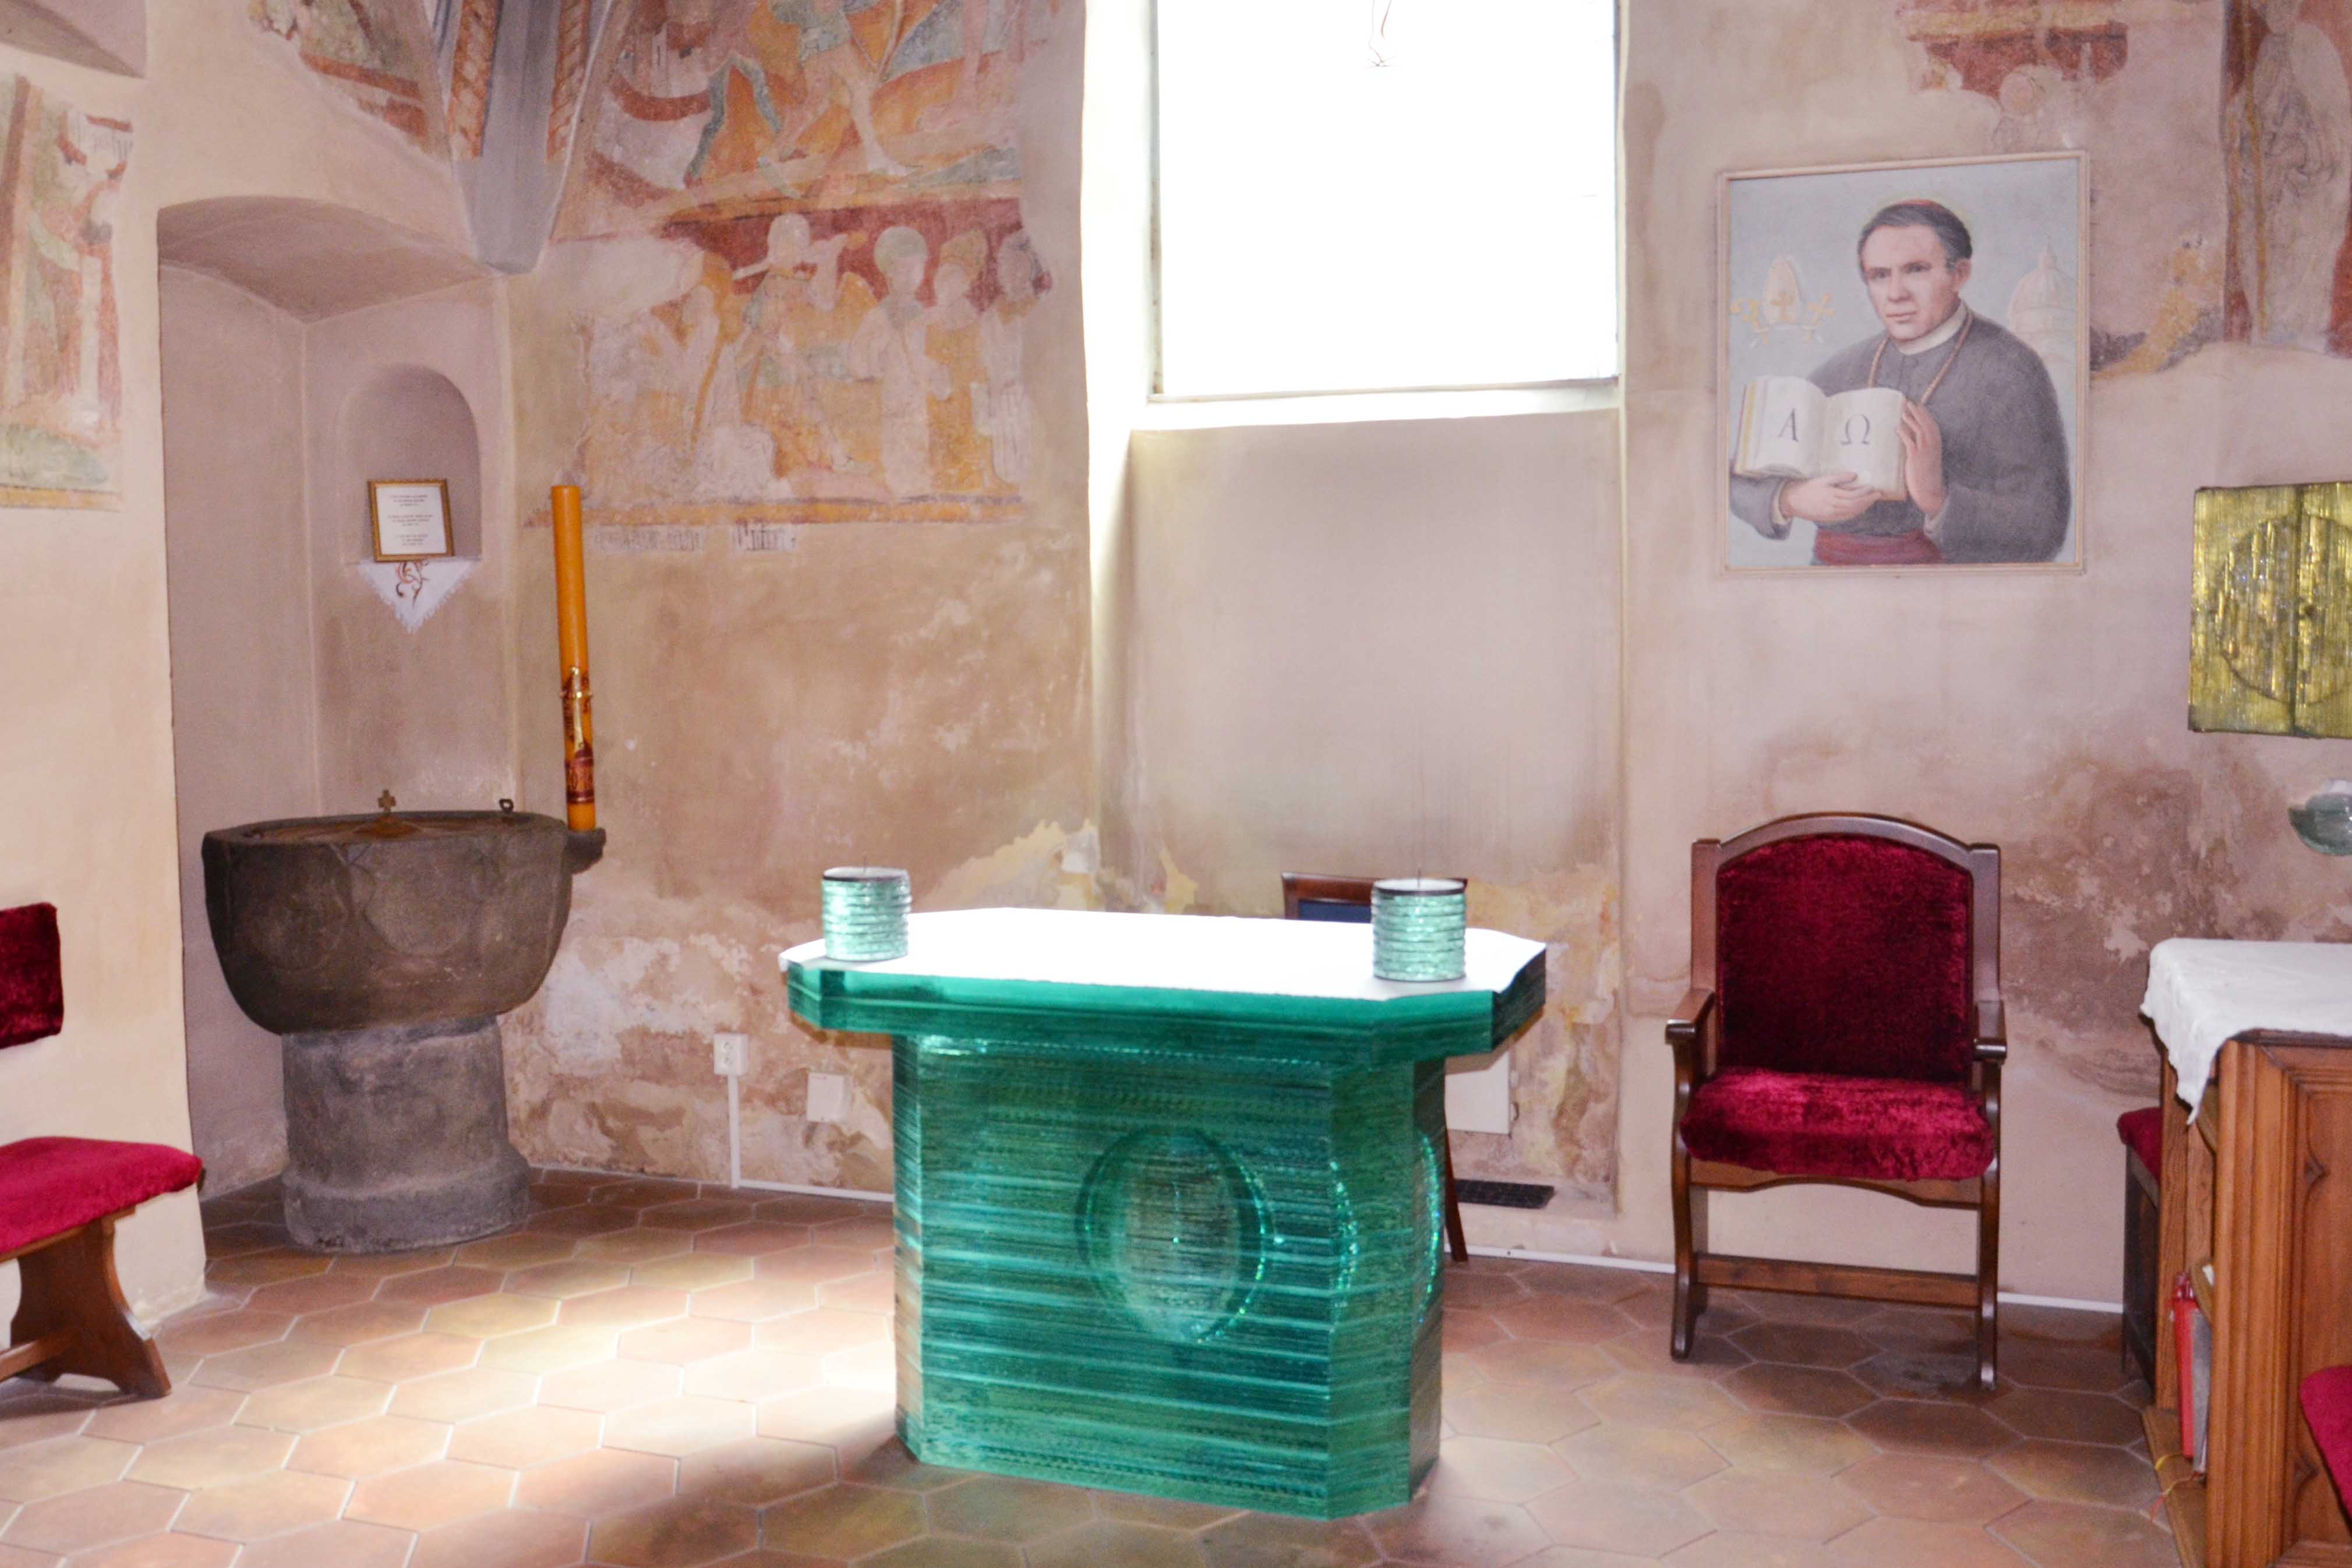 Thánh John đã được rửa tội tại Nhà thờ Thánh James Đại đế, Prachatitz